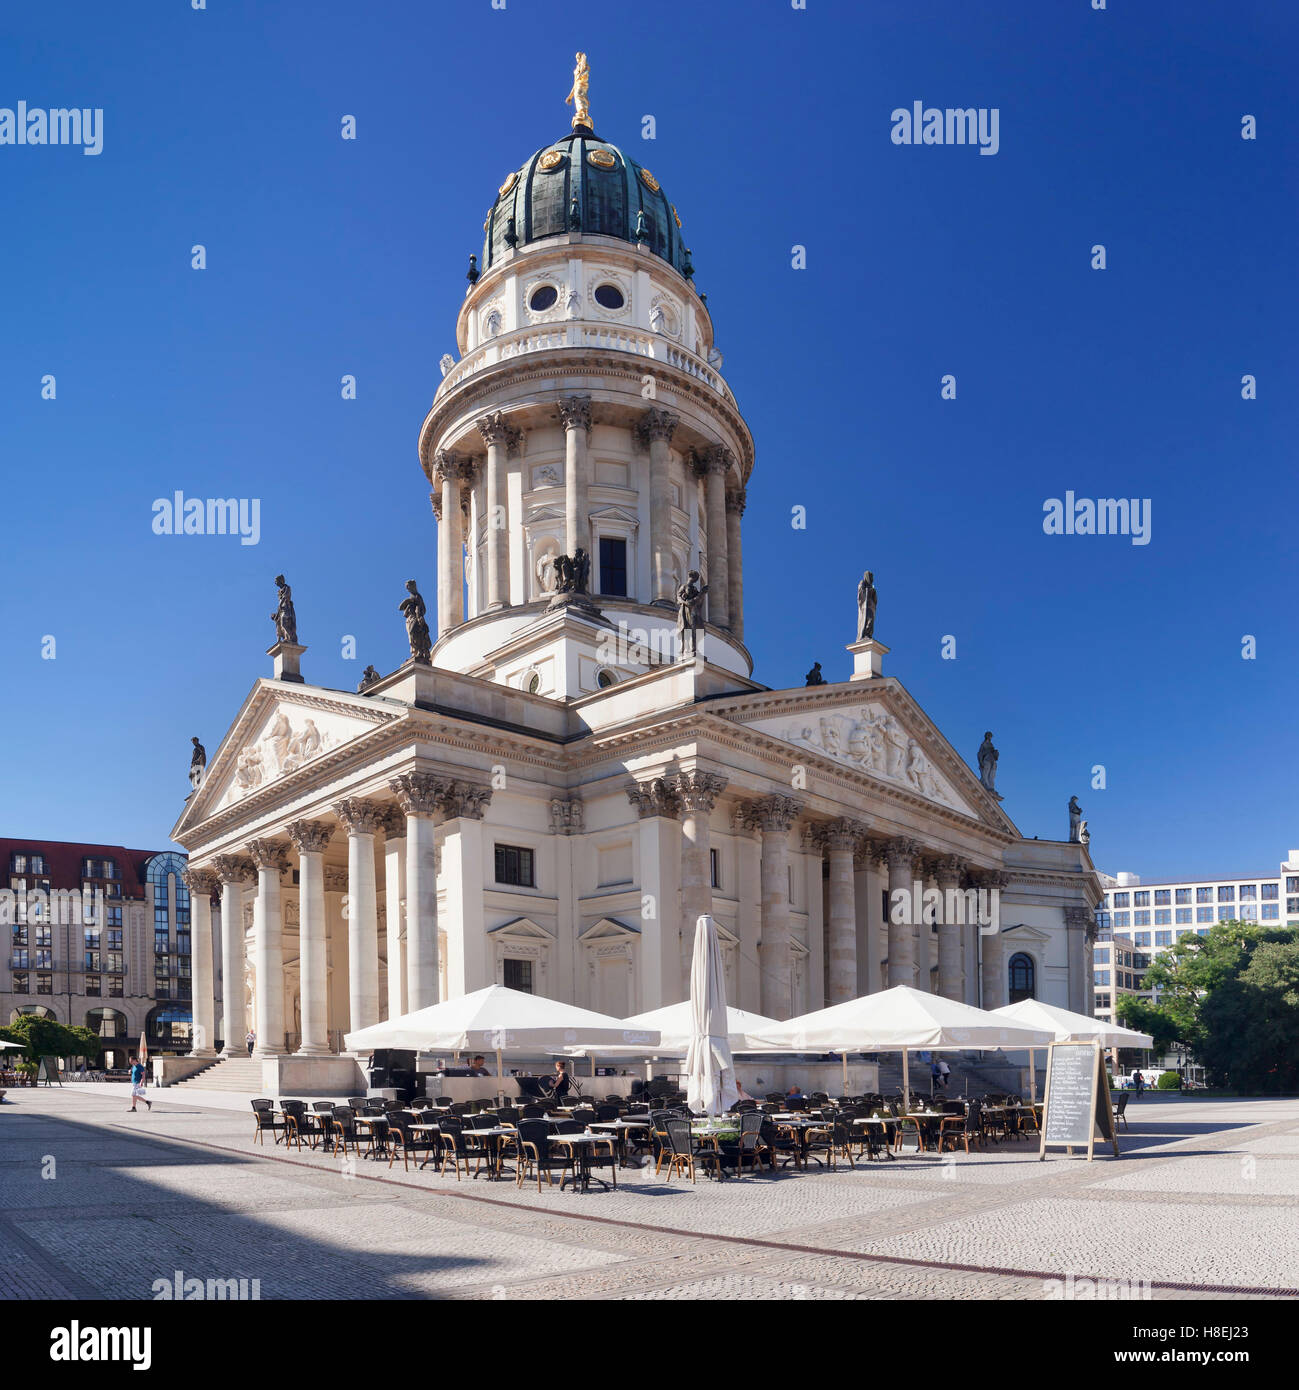 Deutscher Dom (German Cathedral), Gendarmenmarkt, Mitte, Berlin, Germany, Europe Stock Photo